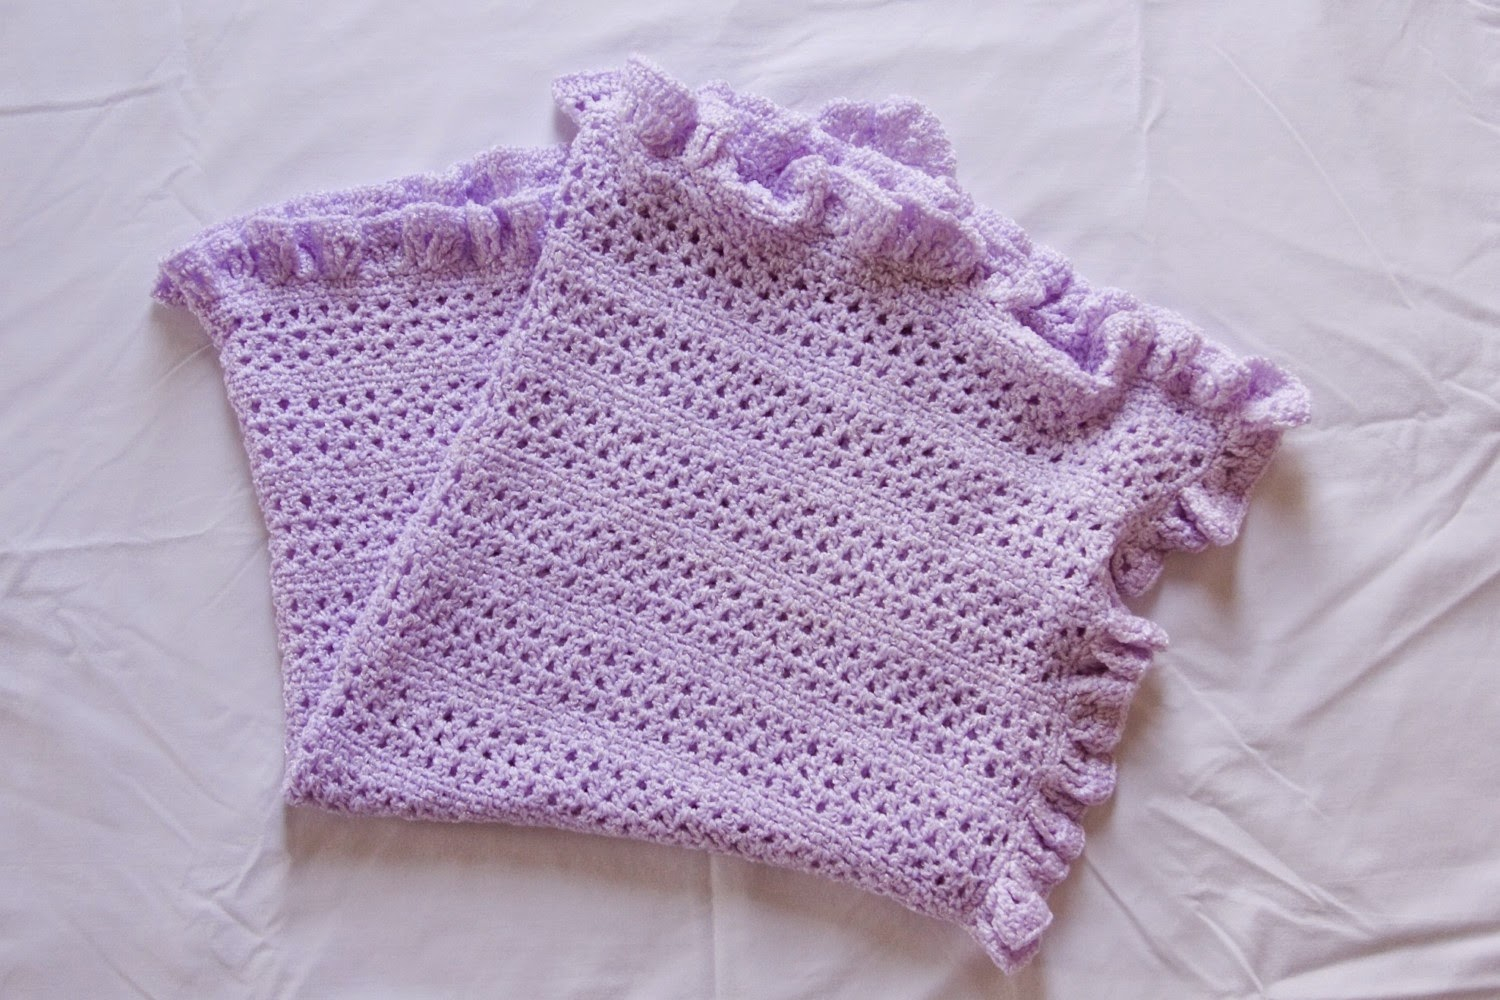 Crochet Blanket Pattern For Beginners Best Free Crochet Blanket Patterns For Beginners On Pinterest